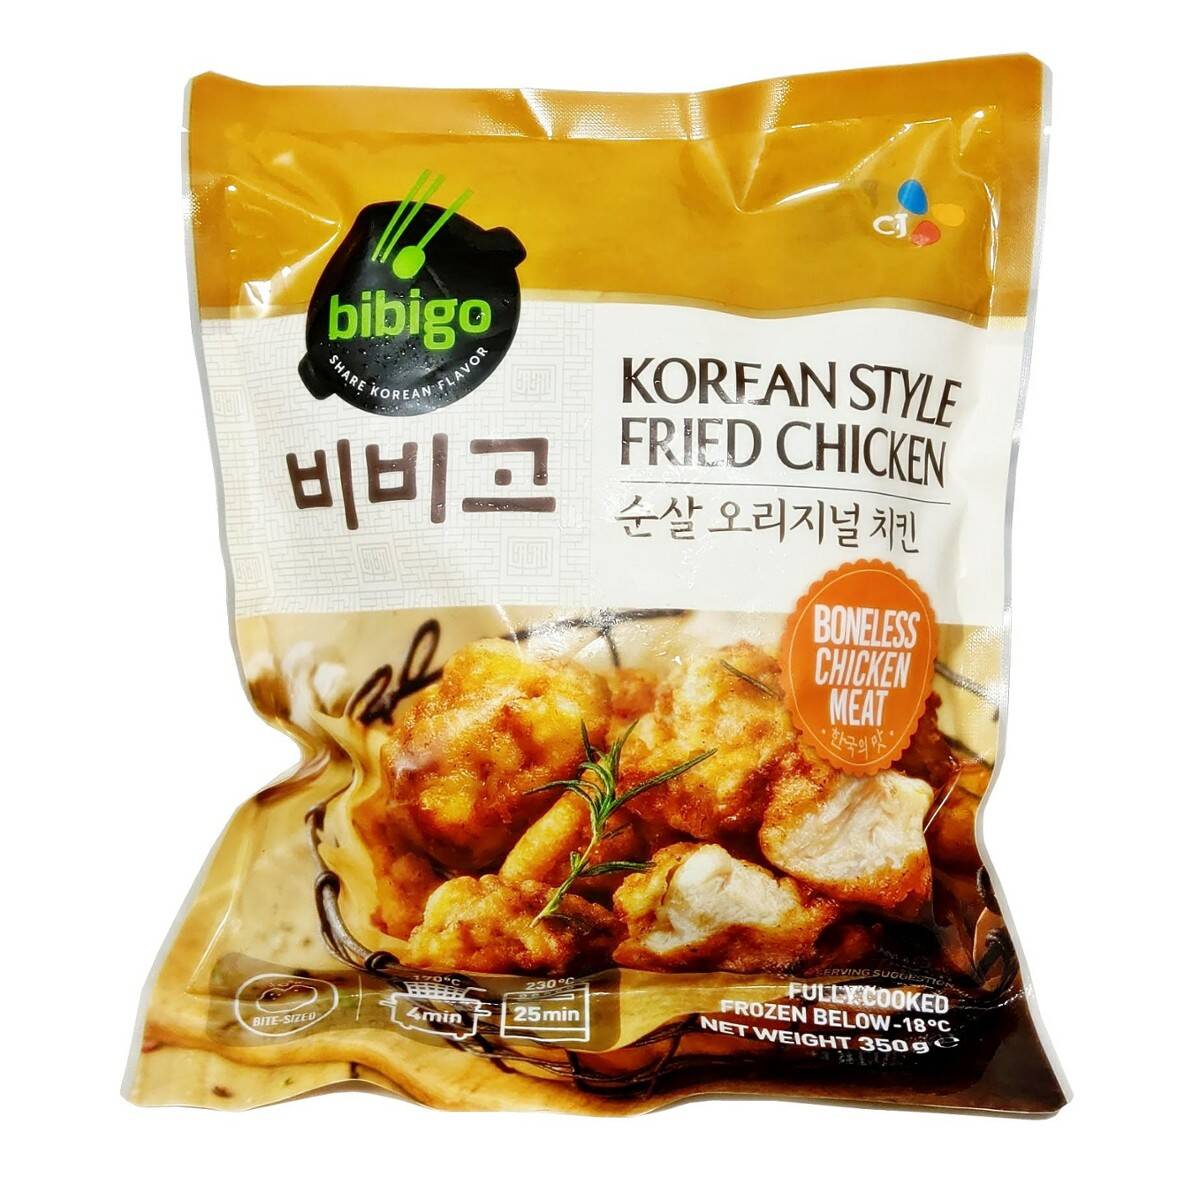 Korean Style Fried Chicken 